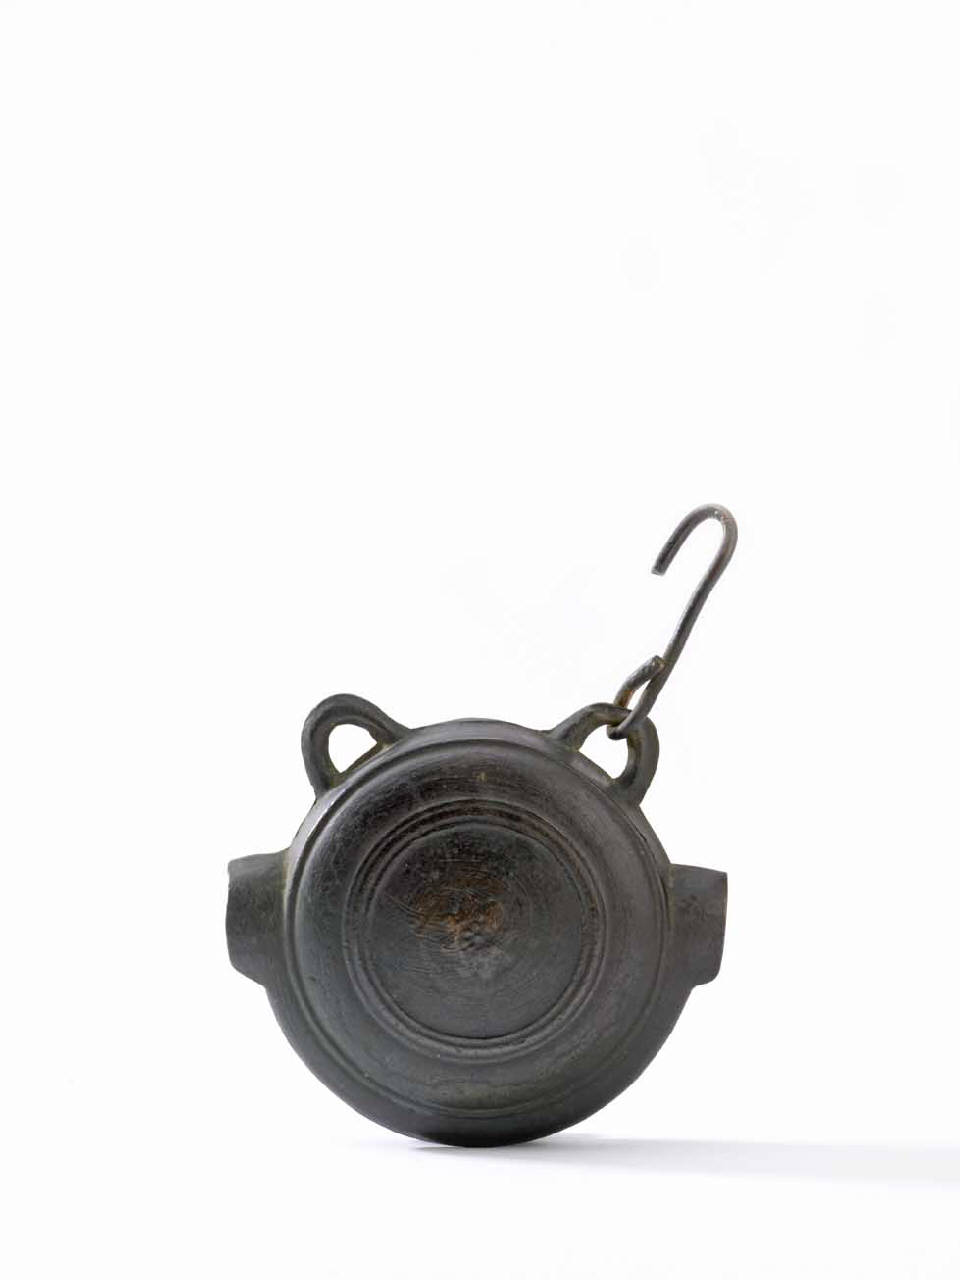 loto (campana) - manifattura giapponese (secc. XVIII/ XIX)